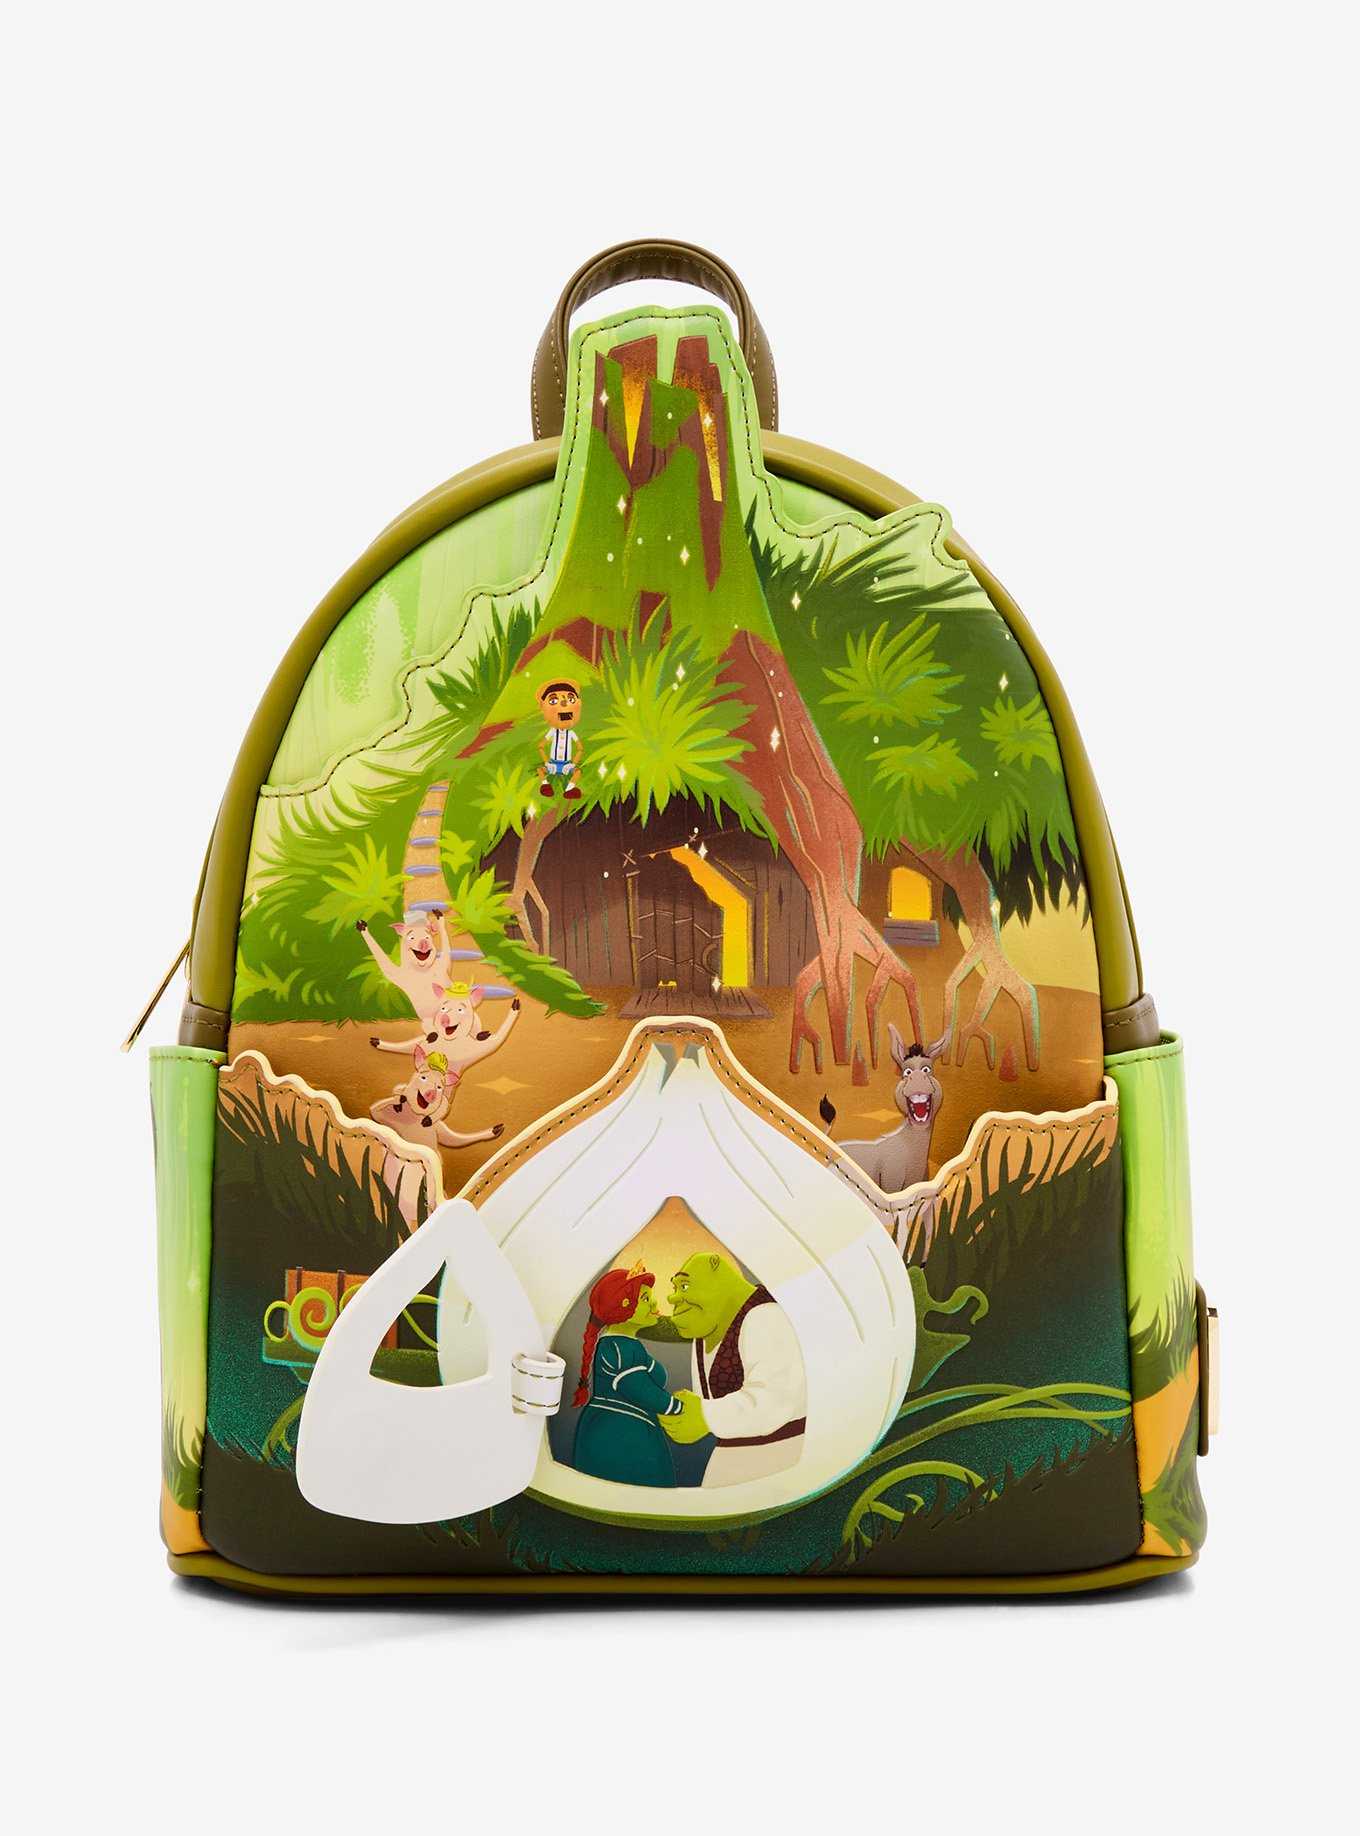 Loungefly Shrek Swamp Mini Backpack, , hi-res